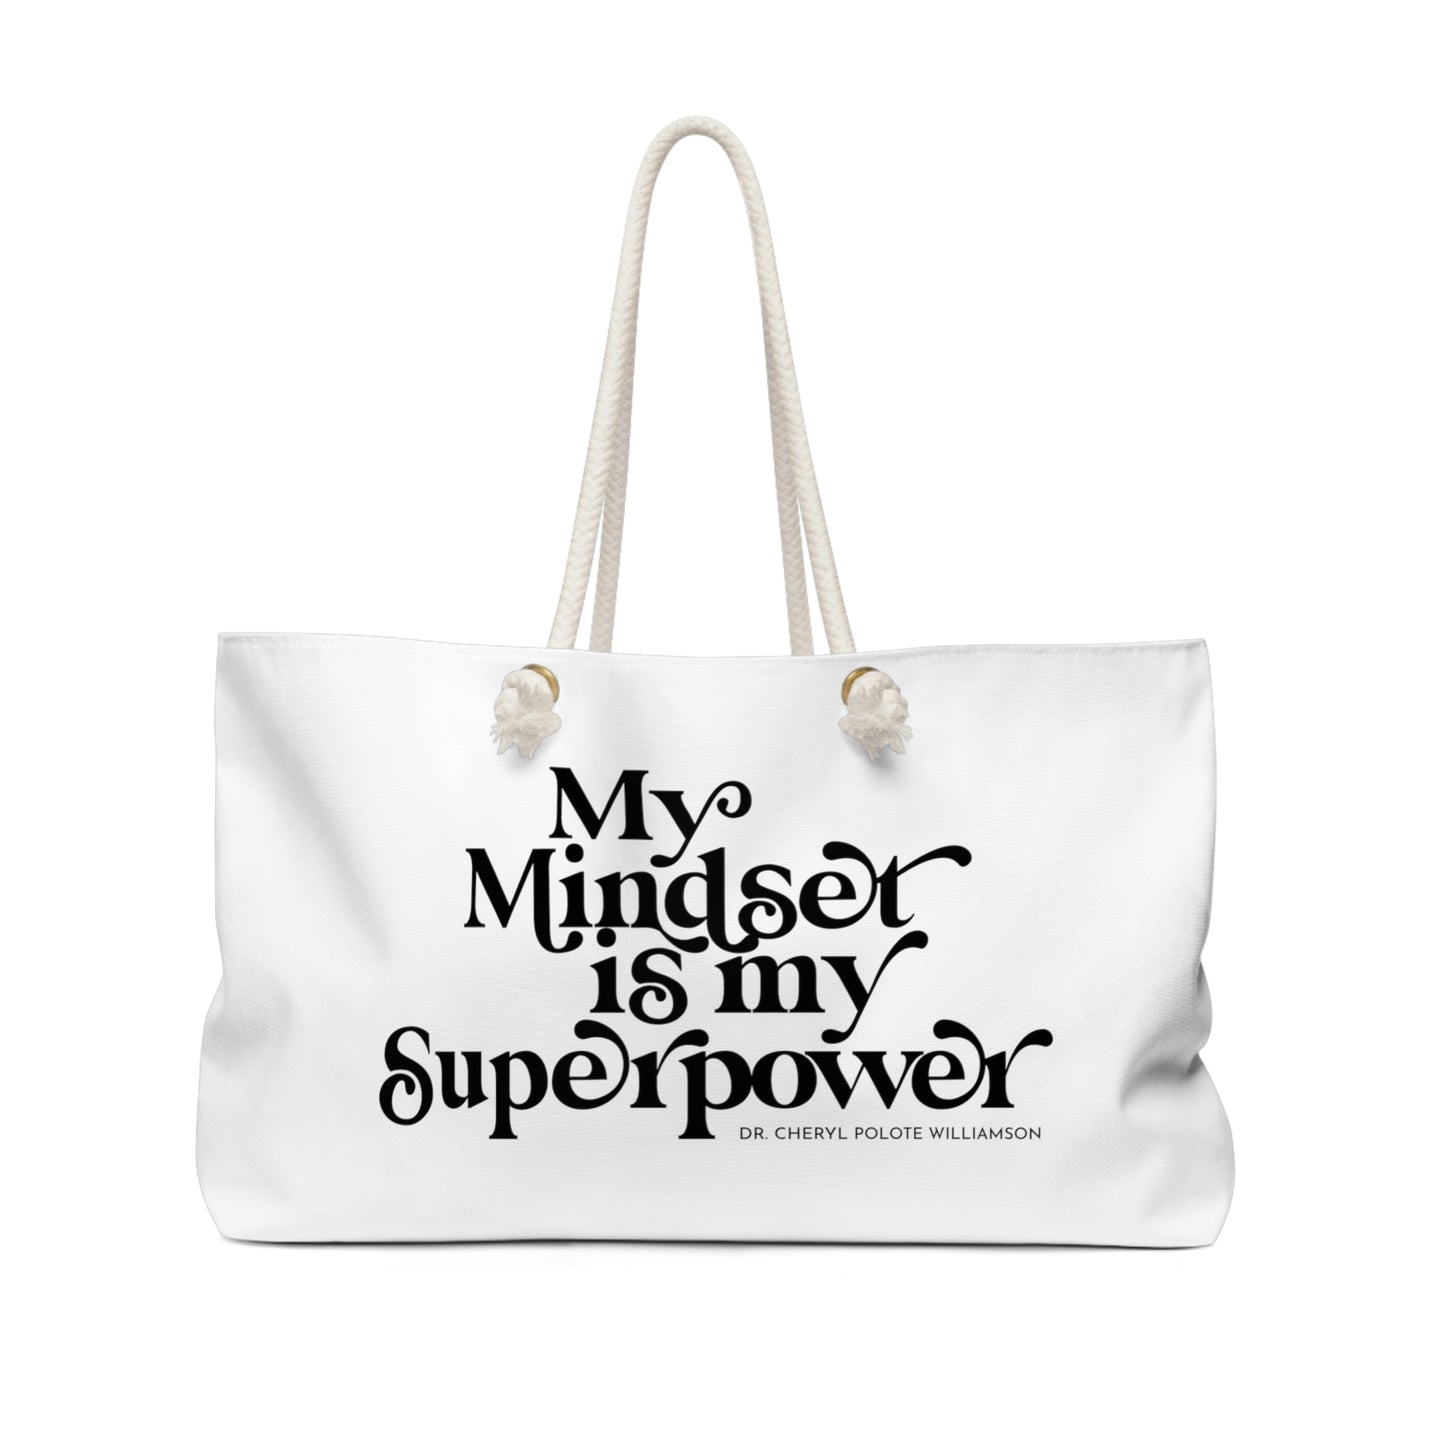 "My Mindset is My Superpower" Weekender Bag